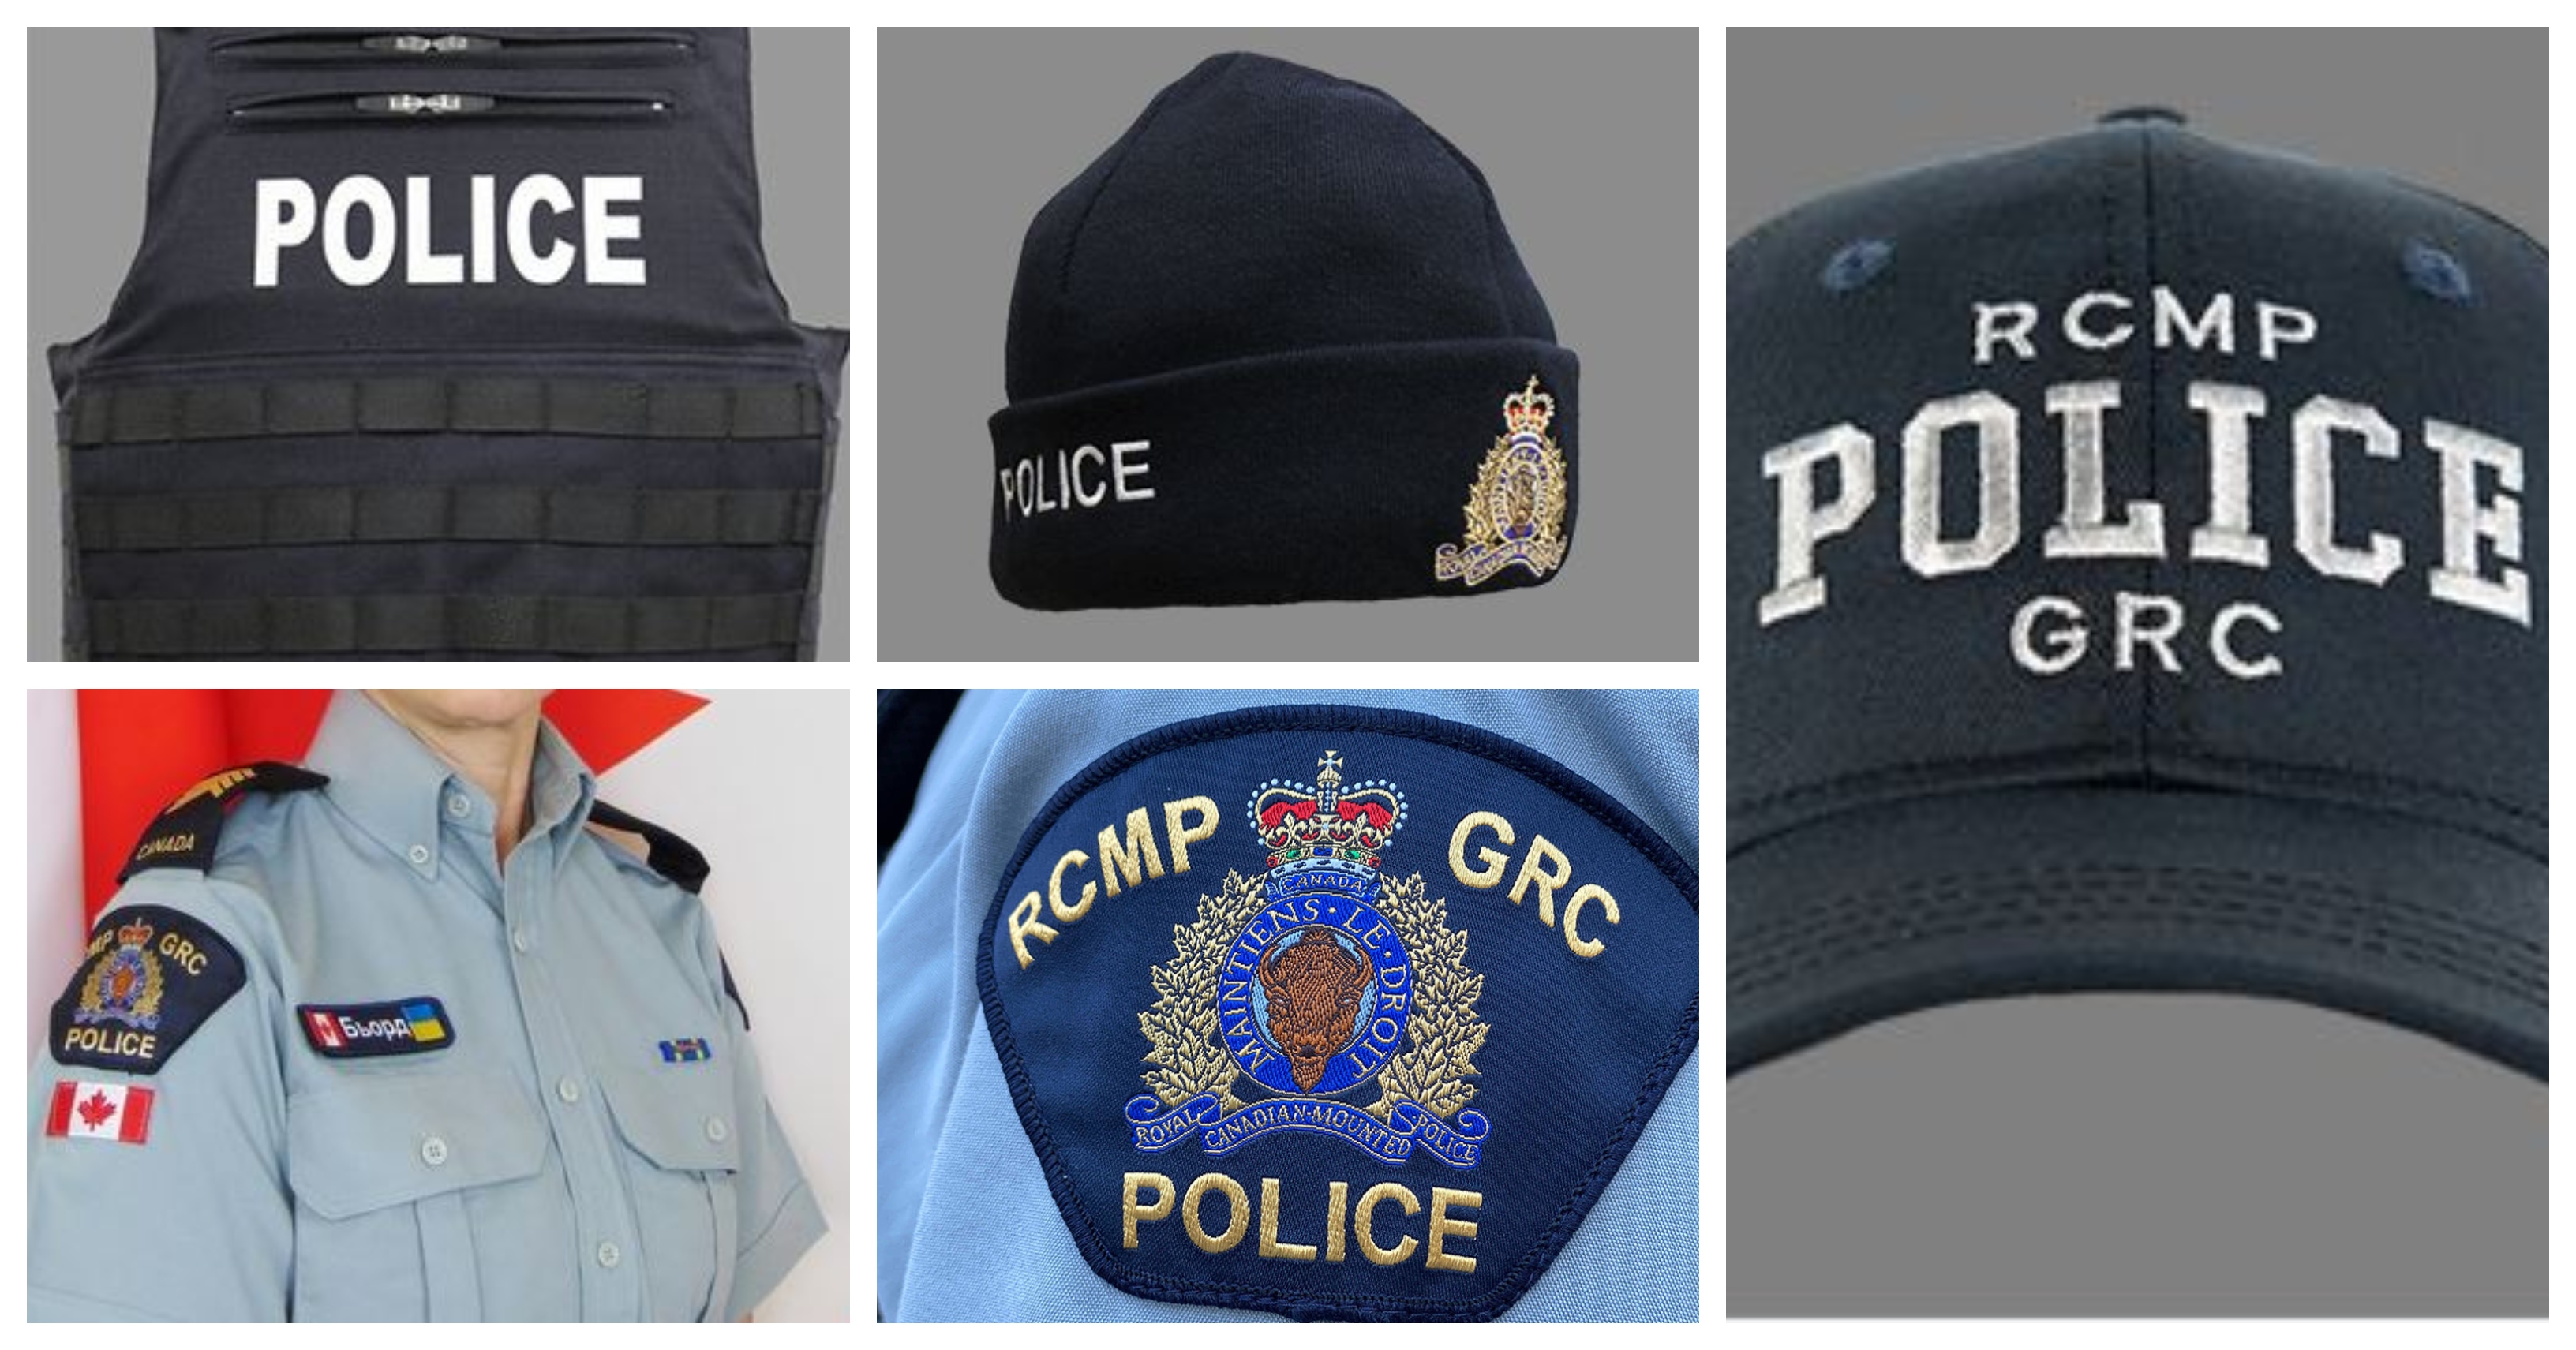 RCMP, Edmonton police uniforms stolen from Calgary home thumbnail